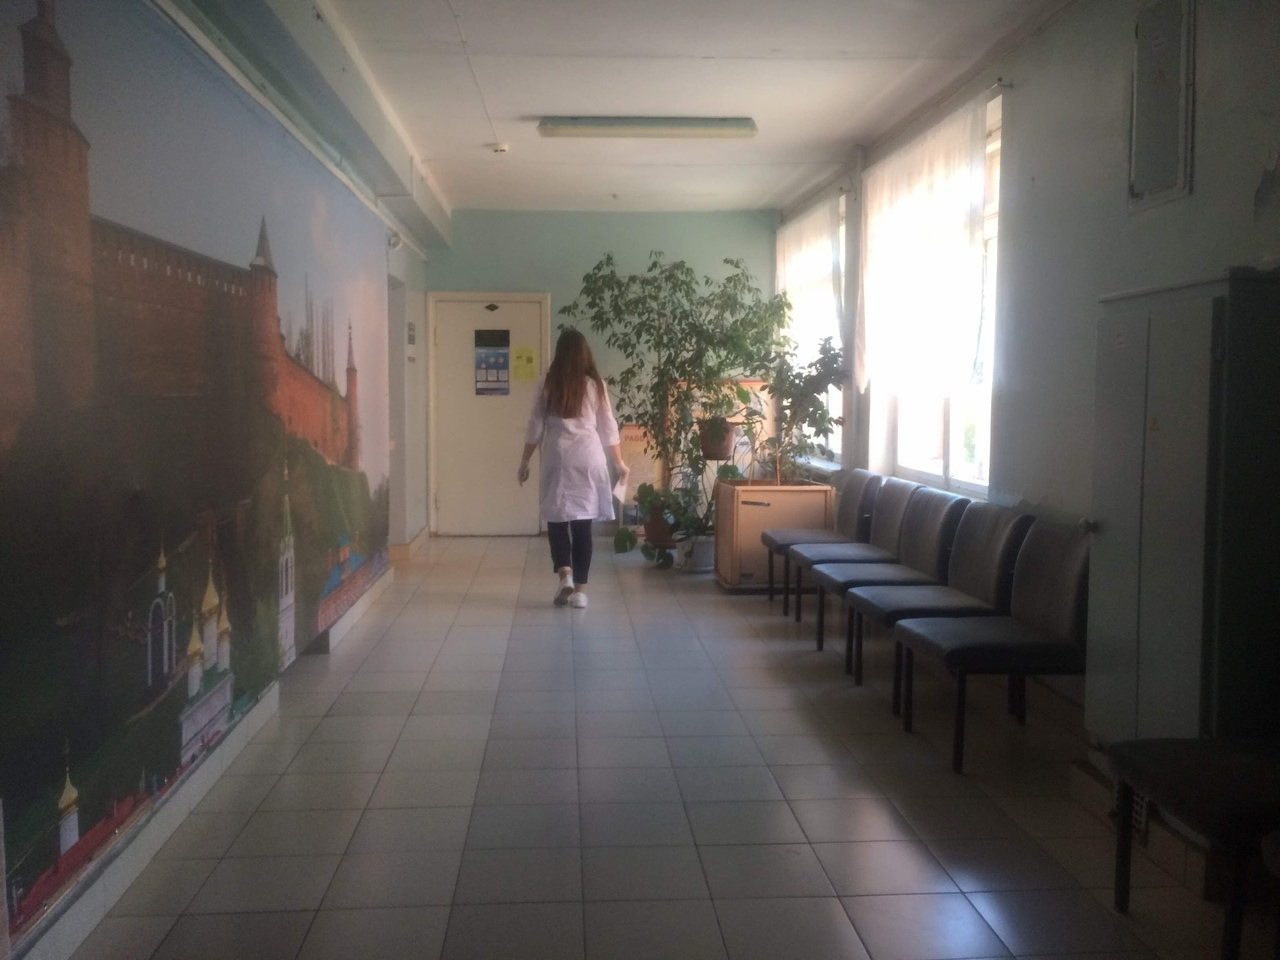 Хроники коронавируса в Нижегородской области: почти 70 тысяч выздоровели